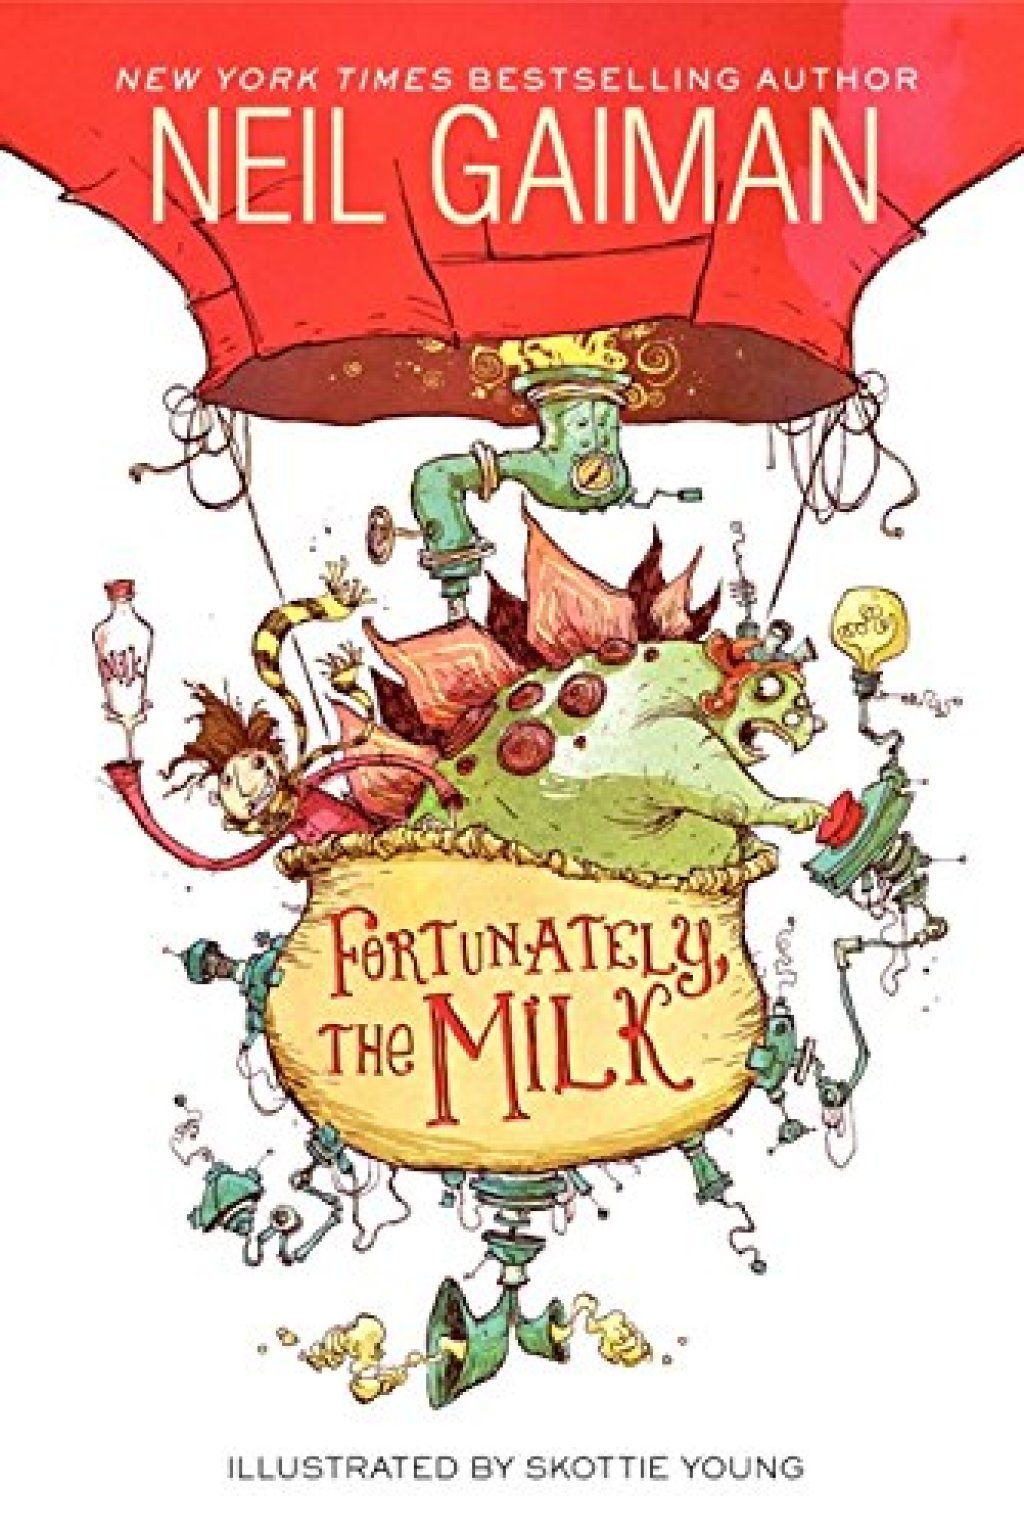 Zum Glück scherzt die Milch Neil Gaiman von Kindern